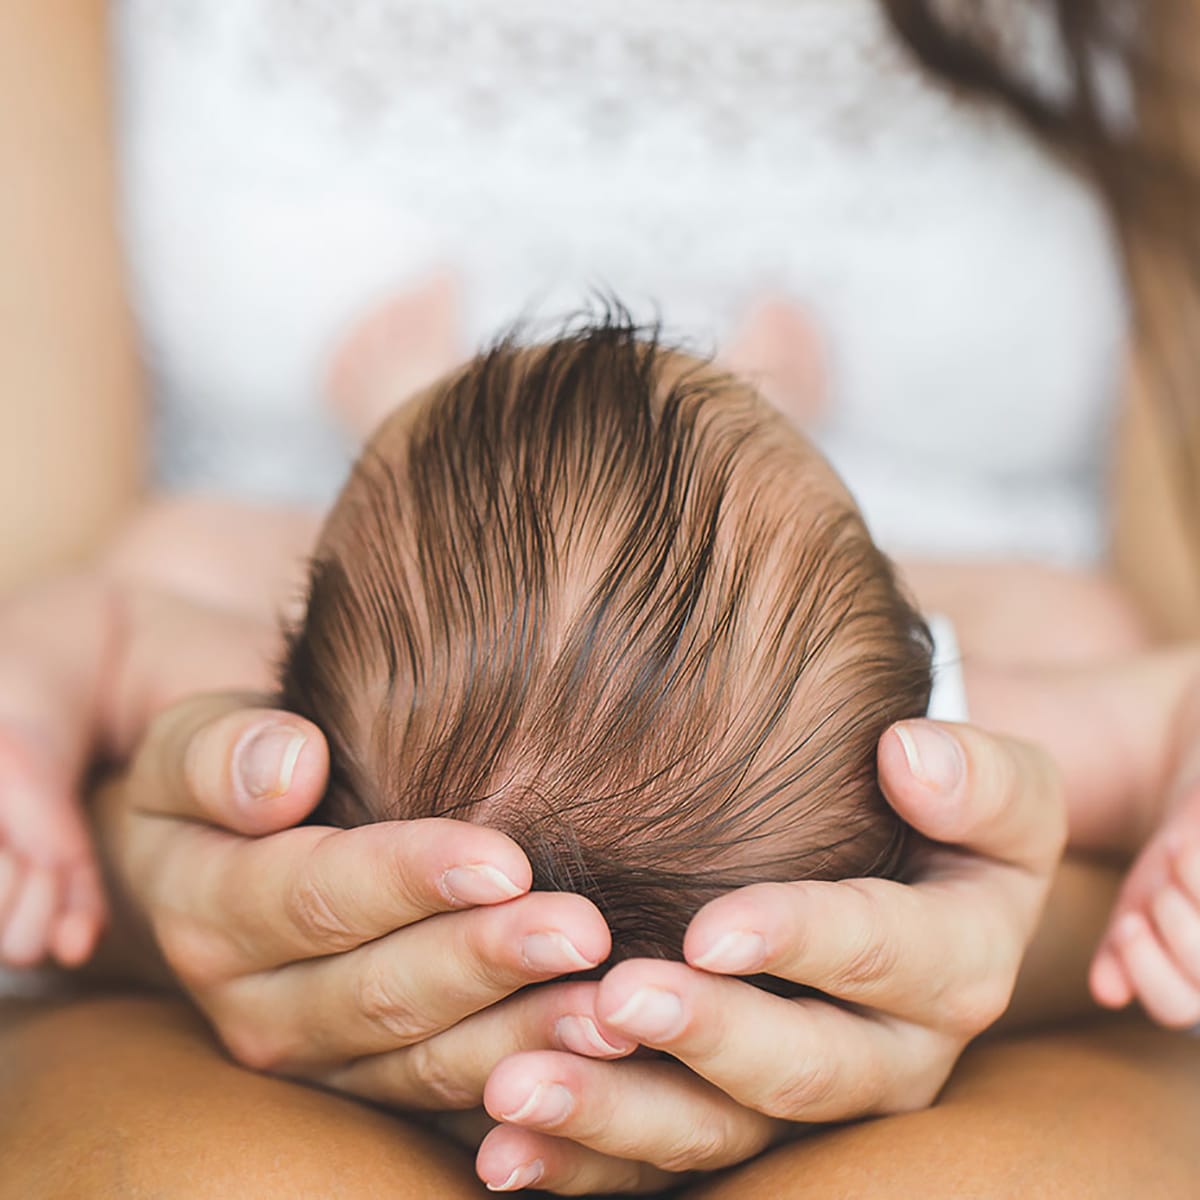 40 Günlük Bebek Bakımı Nasıl Olur? İlk 40 Günde Dikkat Edilmesi Gerekenler